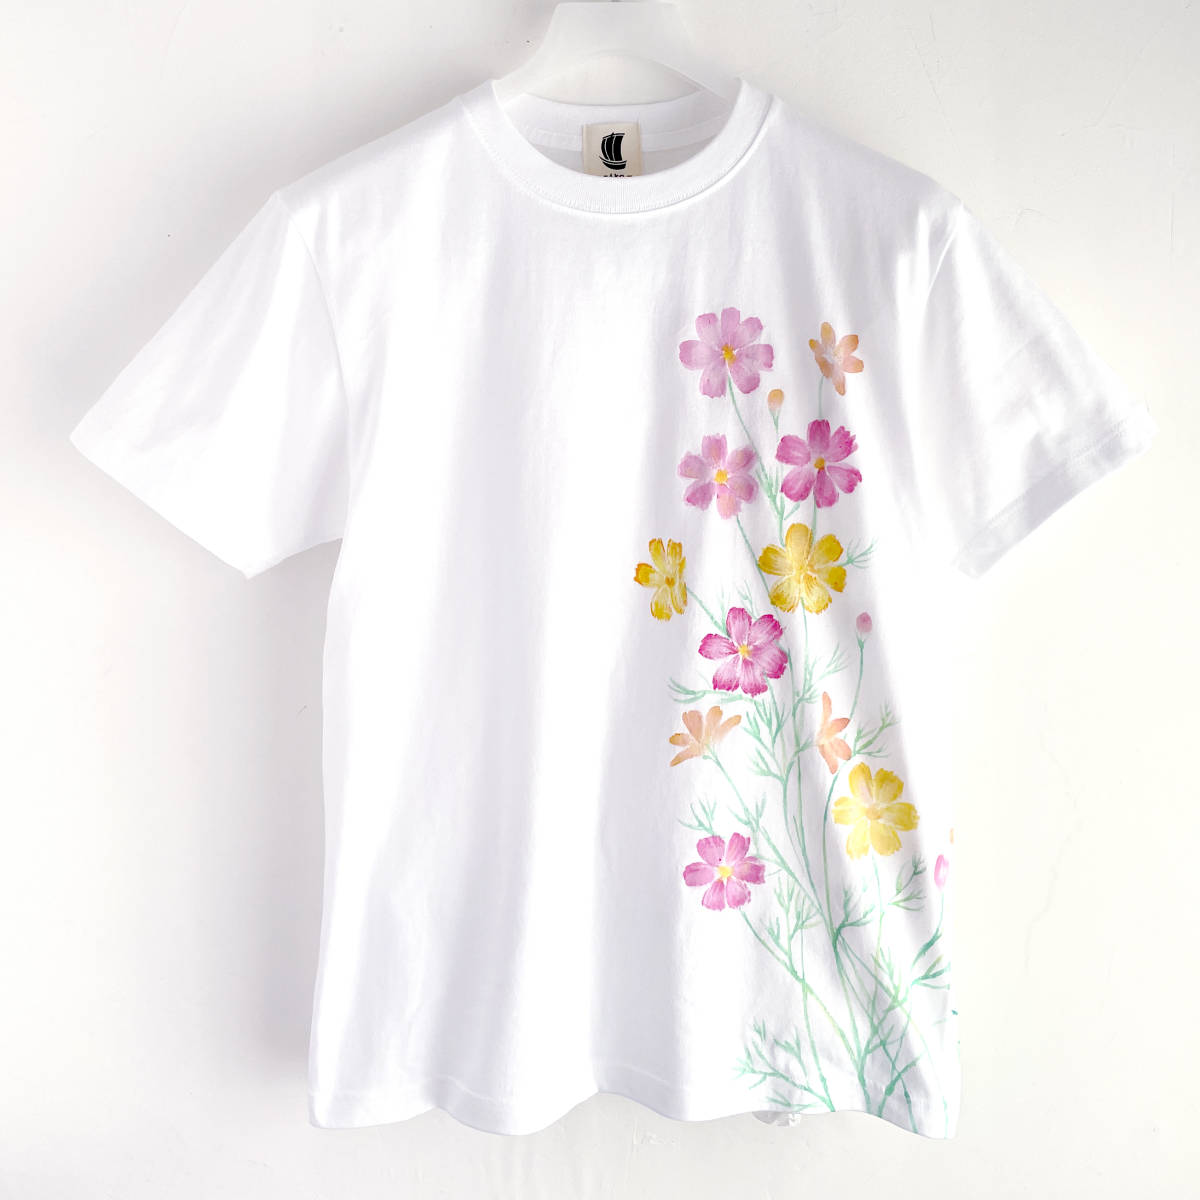 メンズ Tシャツ Mサイズ 白 コスモス柄Tシャツ ホワイト ハンドメイド 手描きTシャツ 秋桜